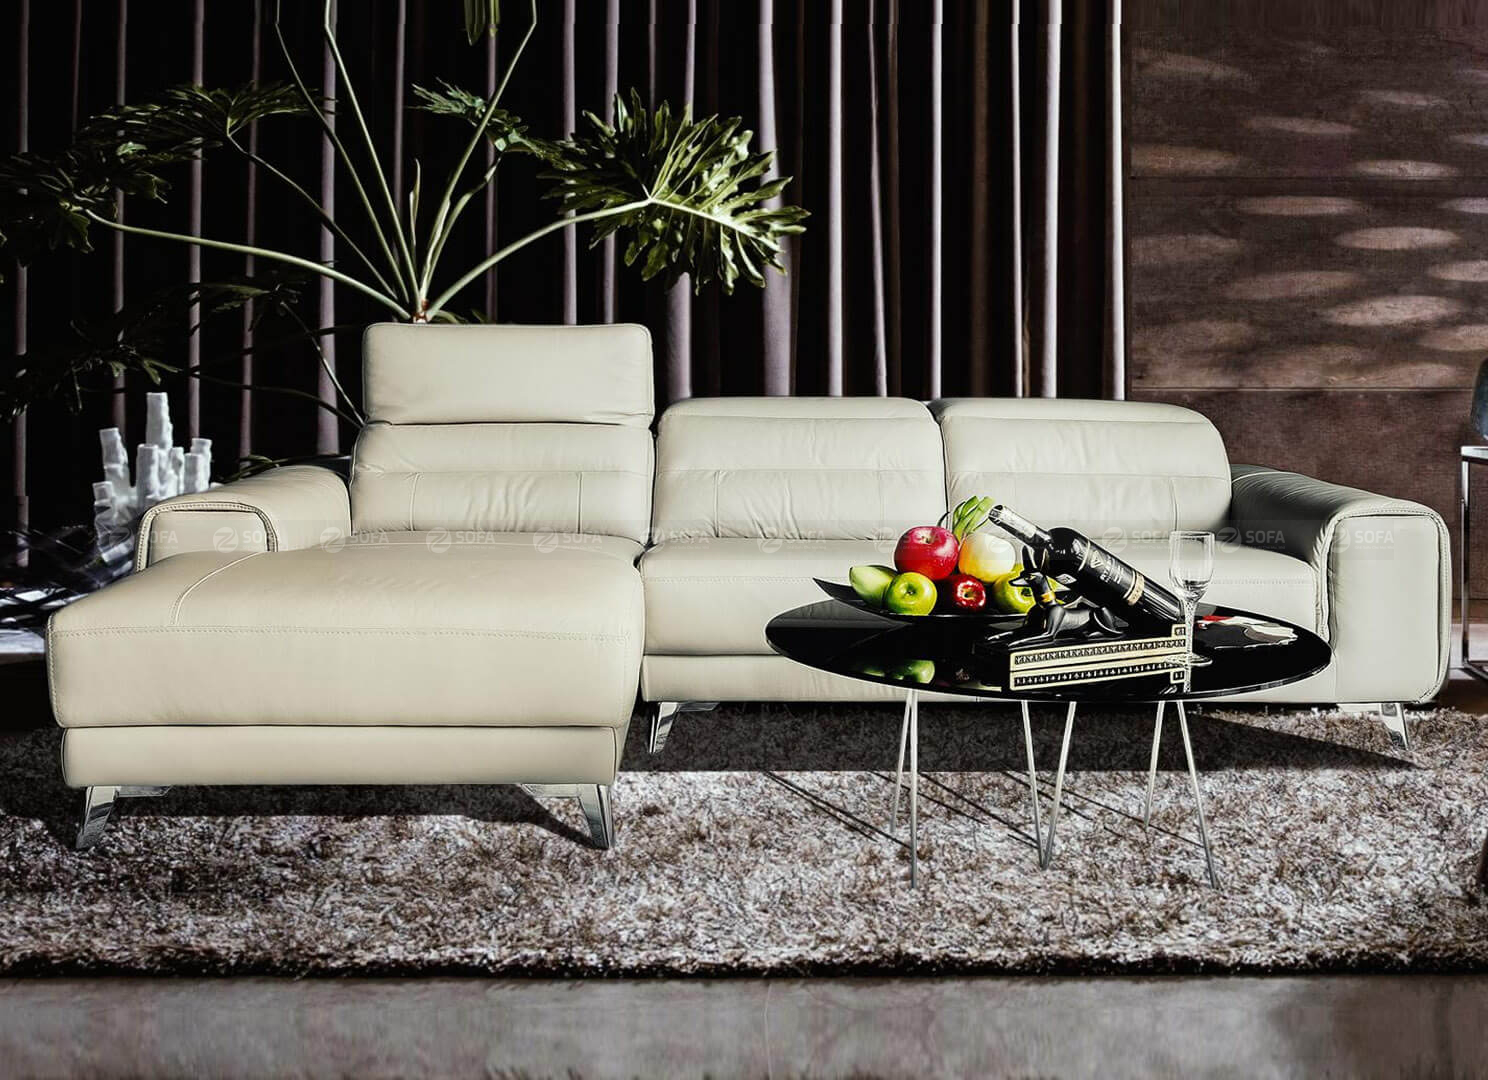 Chọn thảm sofa cho căn nhà hiện đại